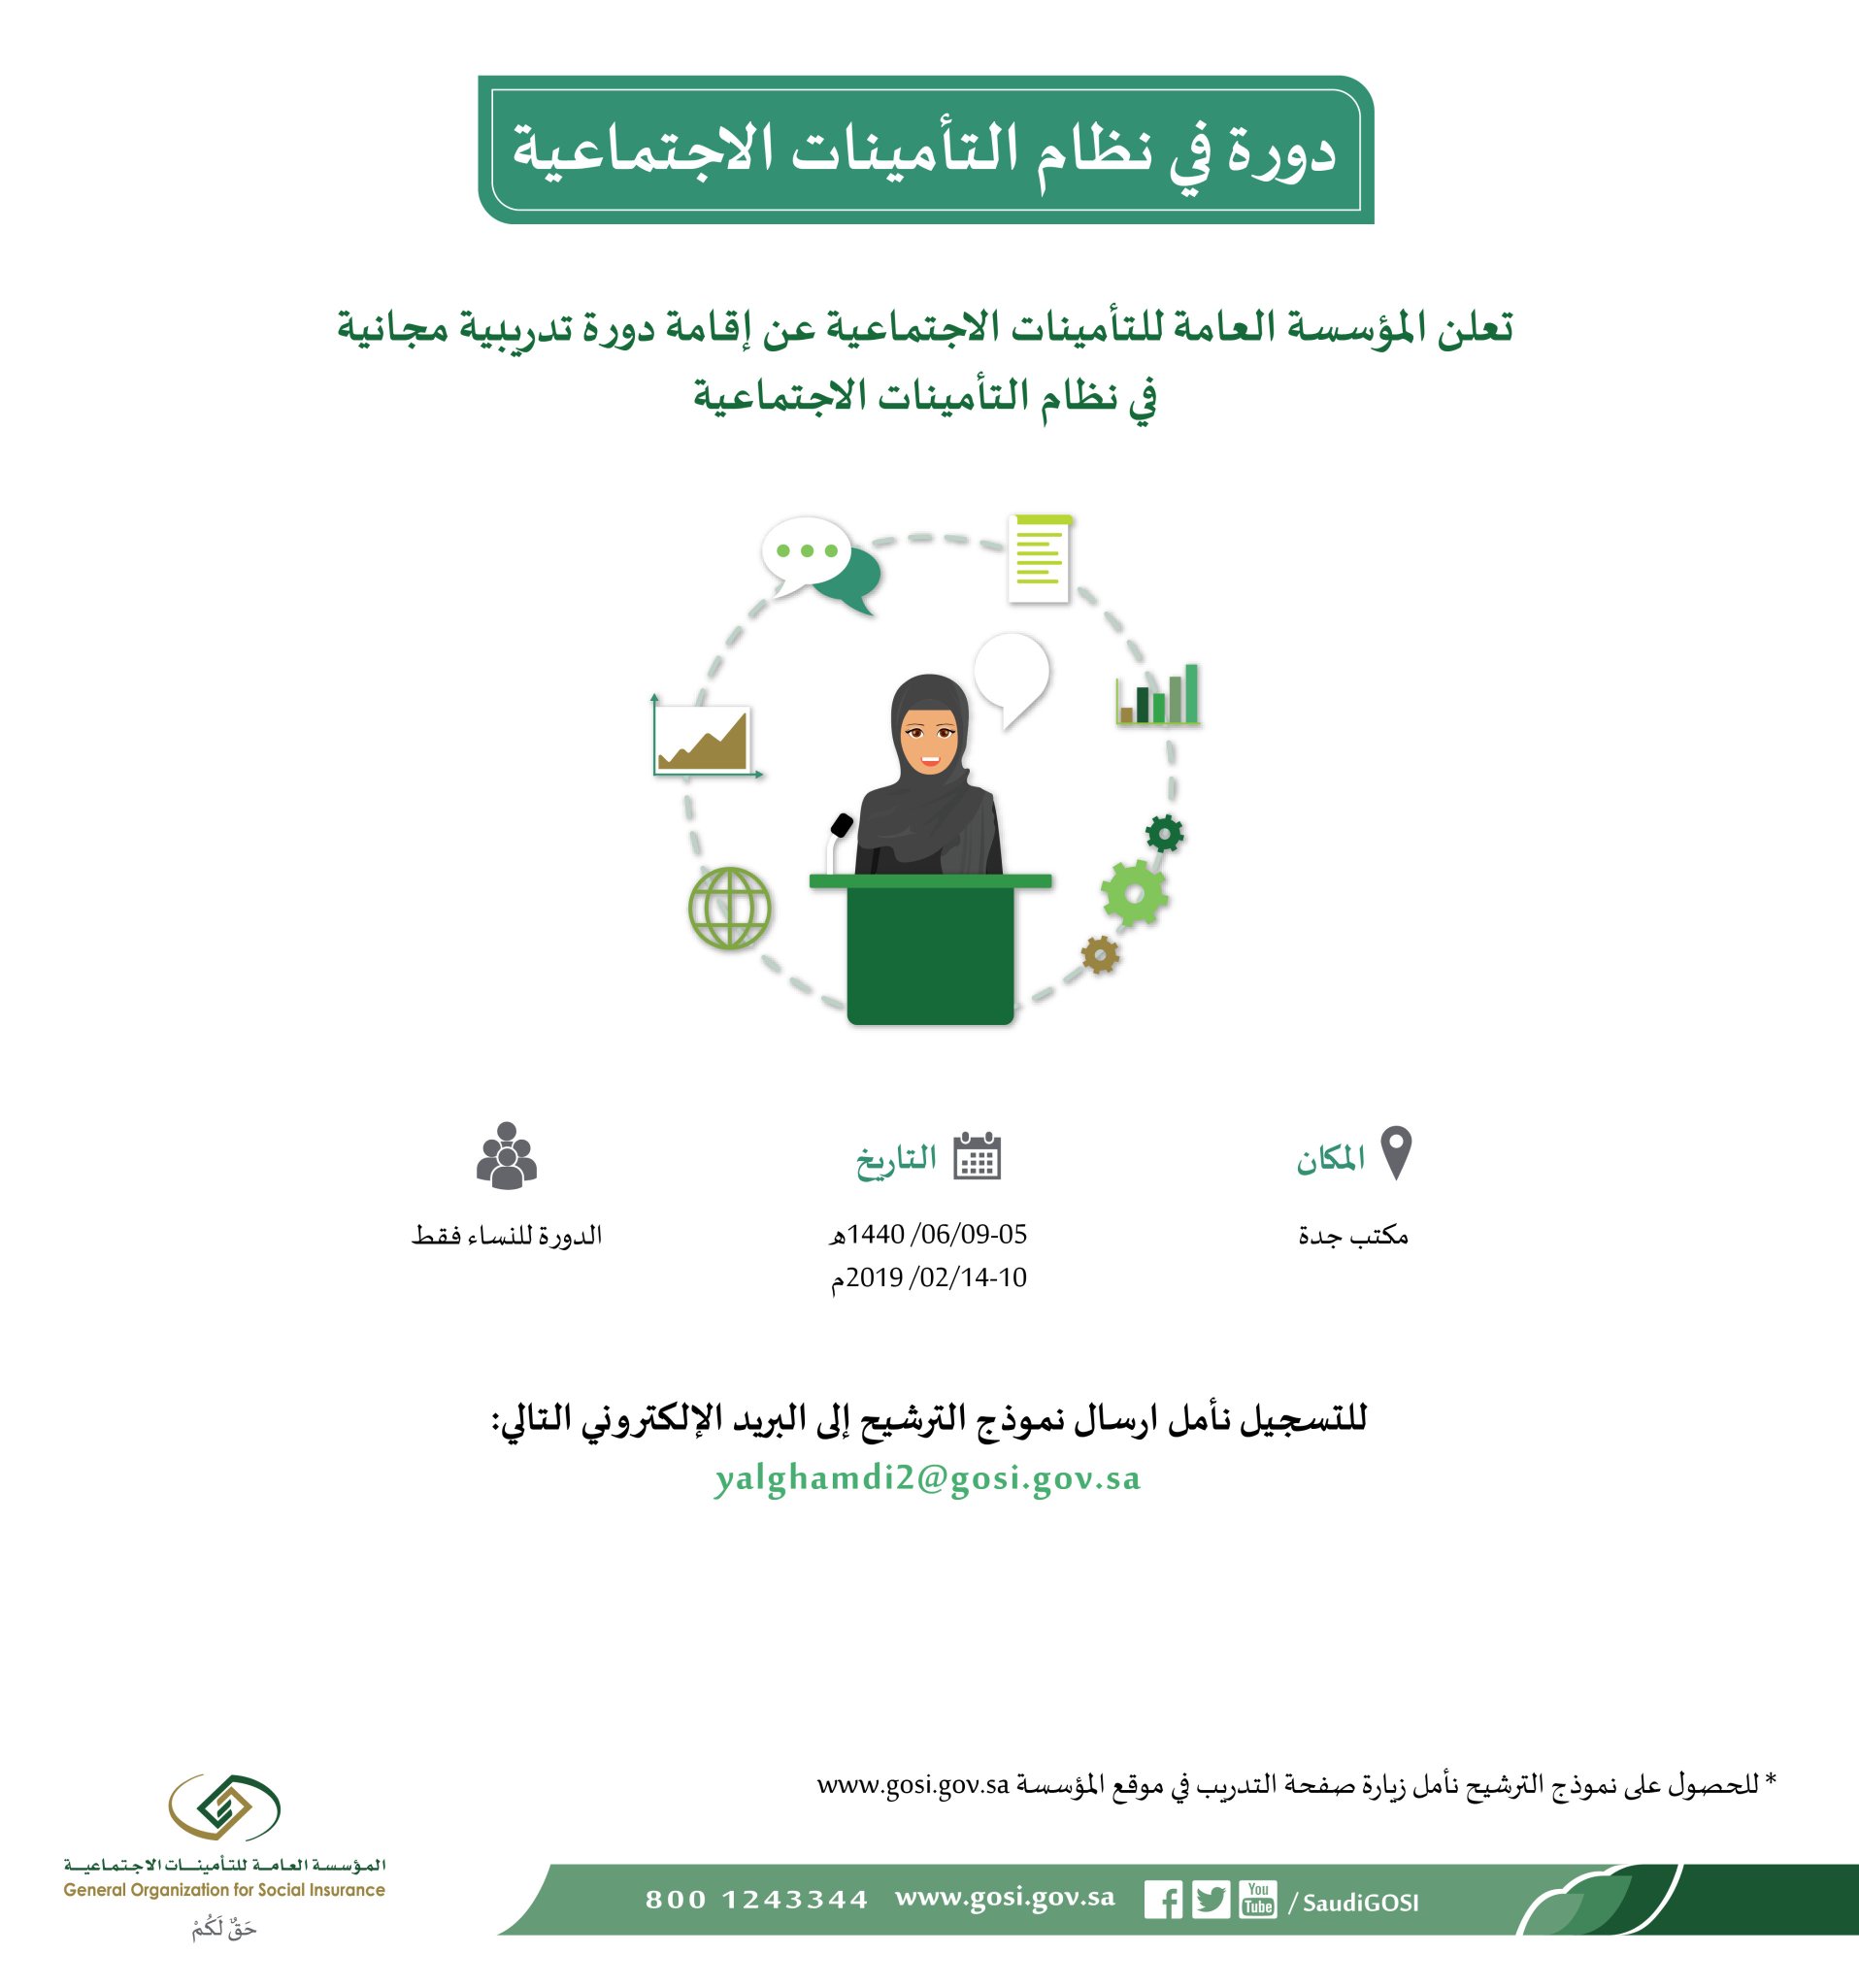 التسجيل في ساند للنساء والرجال شروط ومميزات النظام وخطوات التقديم 1440 في المملكة السعودية